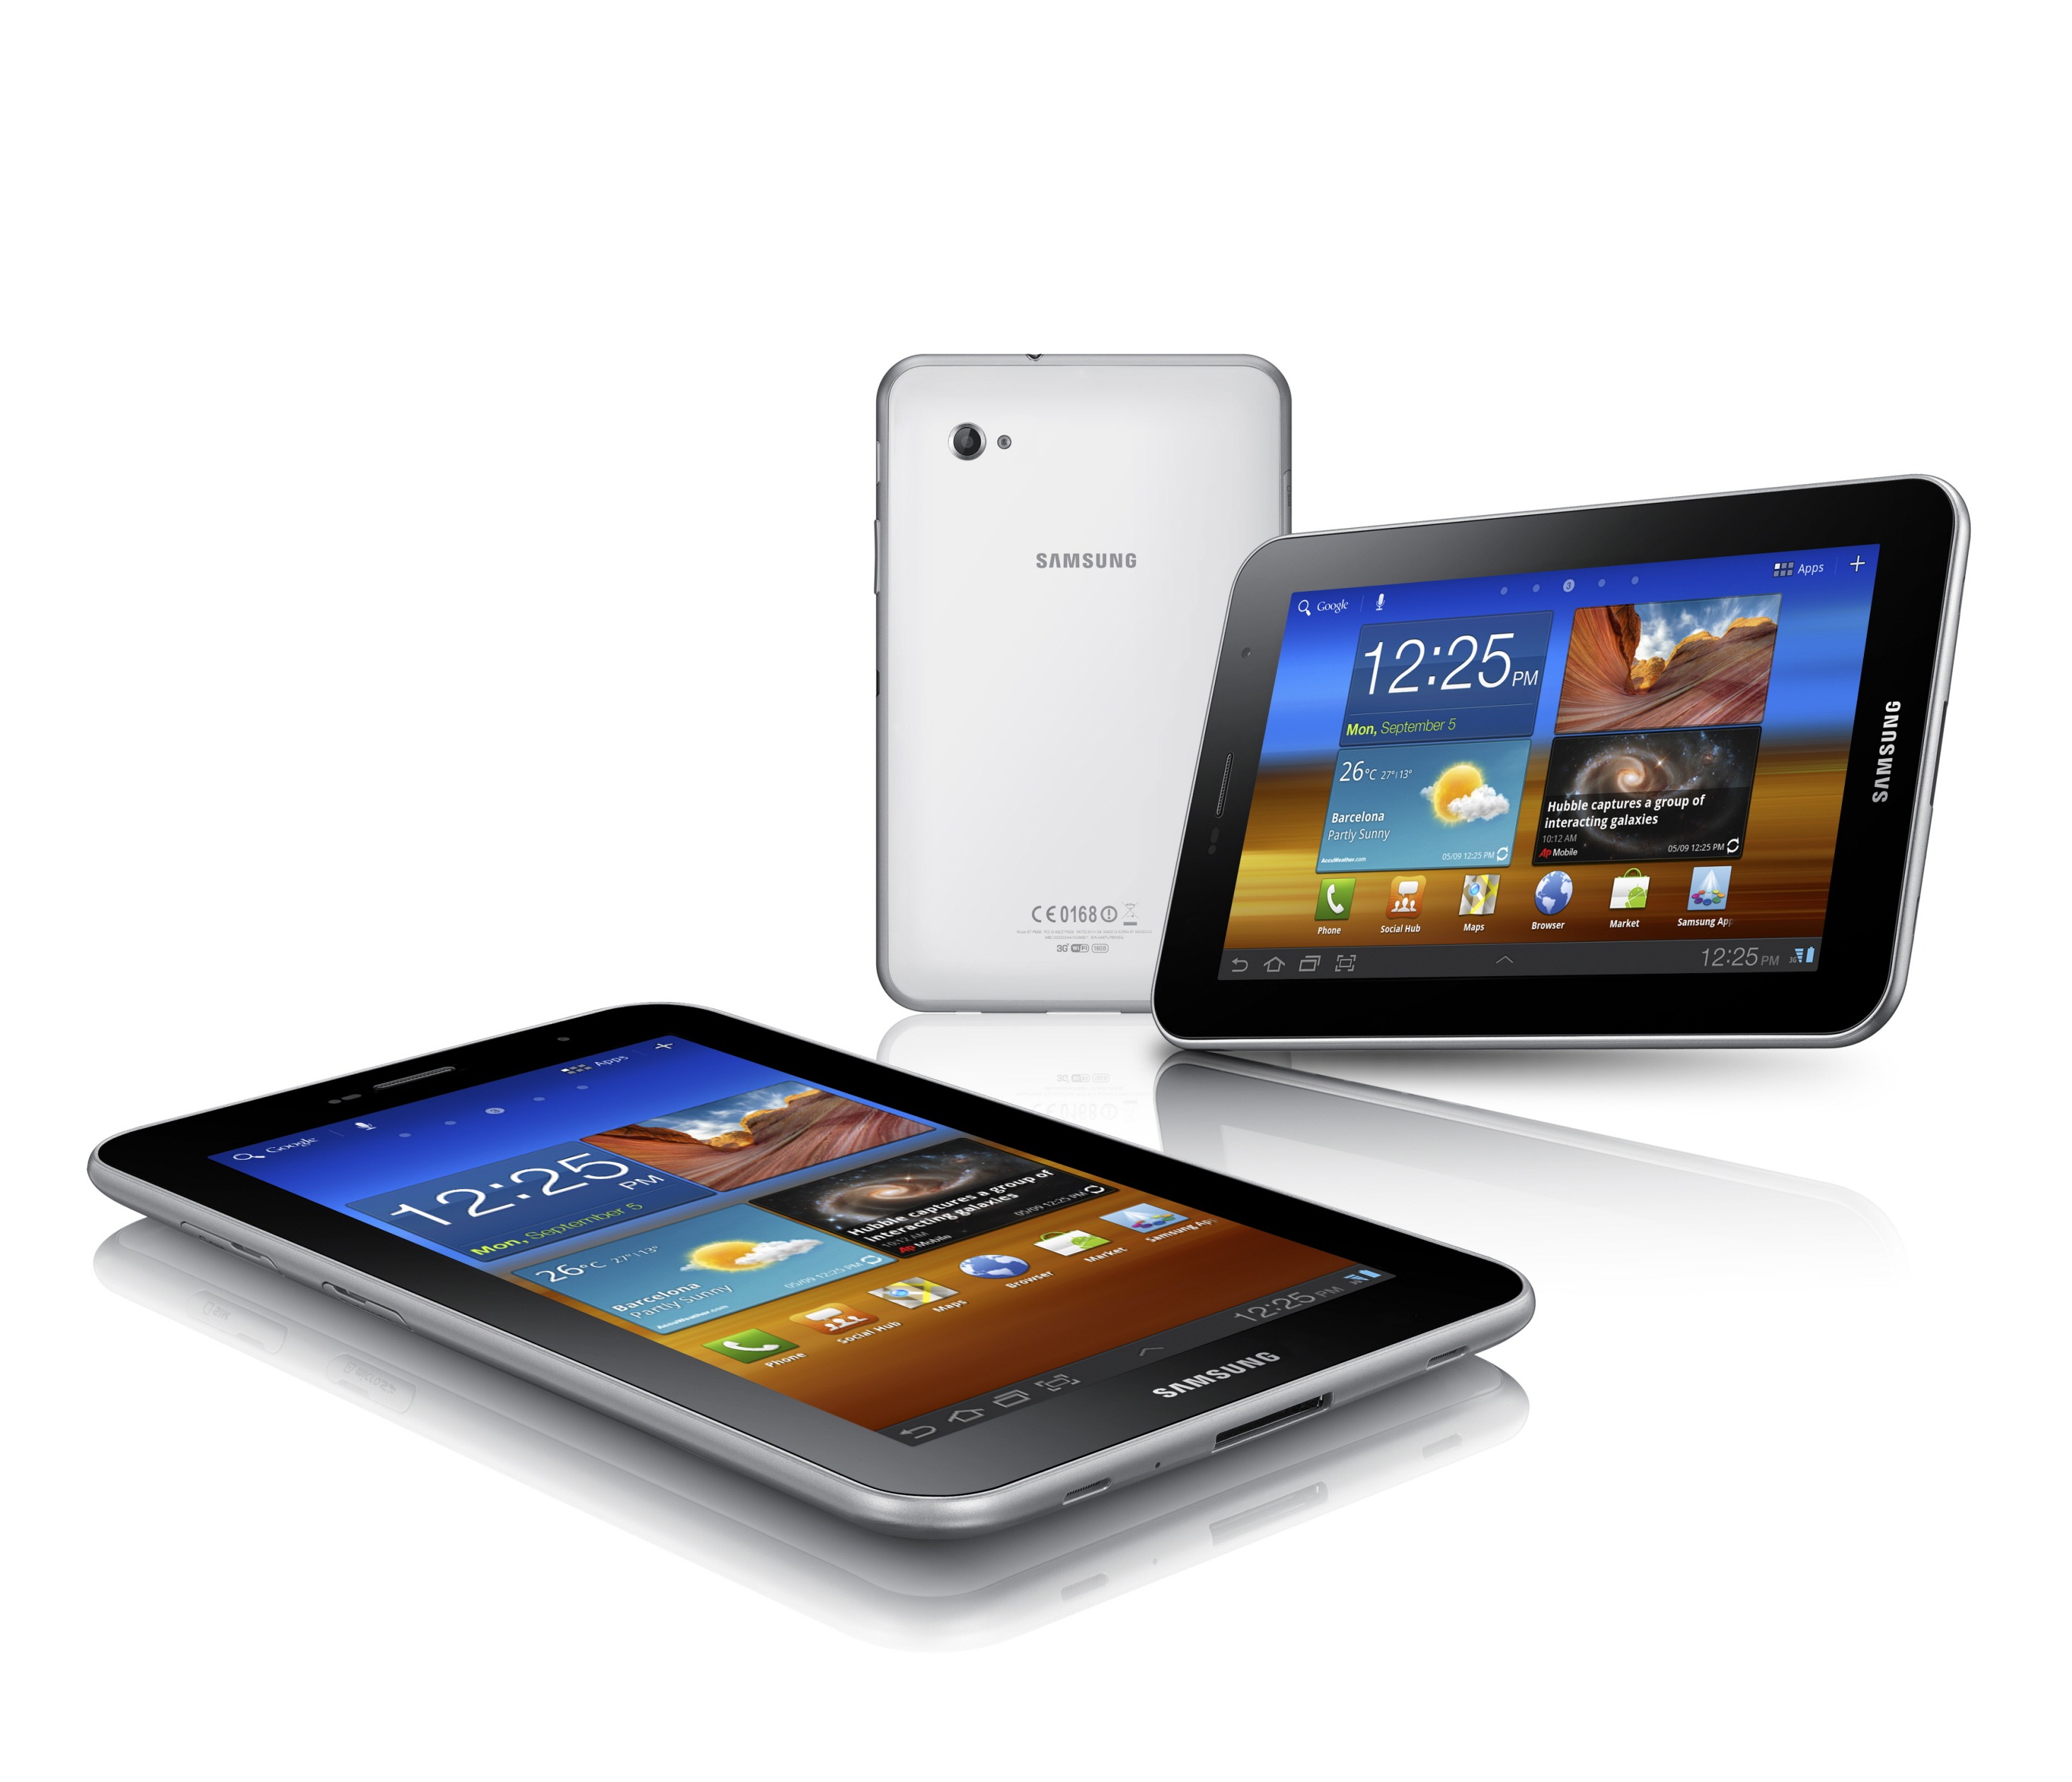 سامسونج تكشف عن الجهاز اللوحي Galaxy Tab 7.0 Plus بنظام قرص العسل ومعالج 1.2 جيجاهيرتز ثنائي النواه